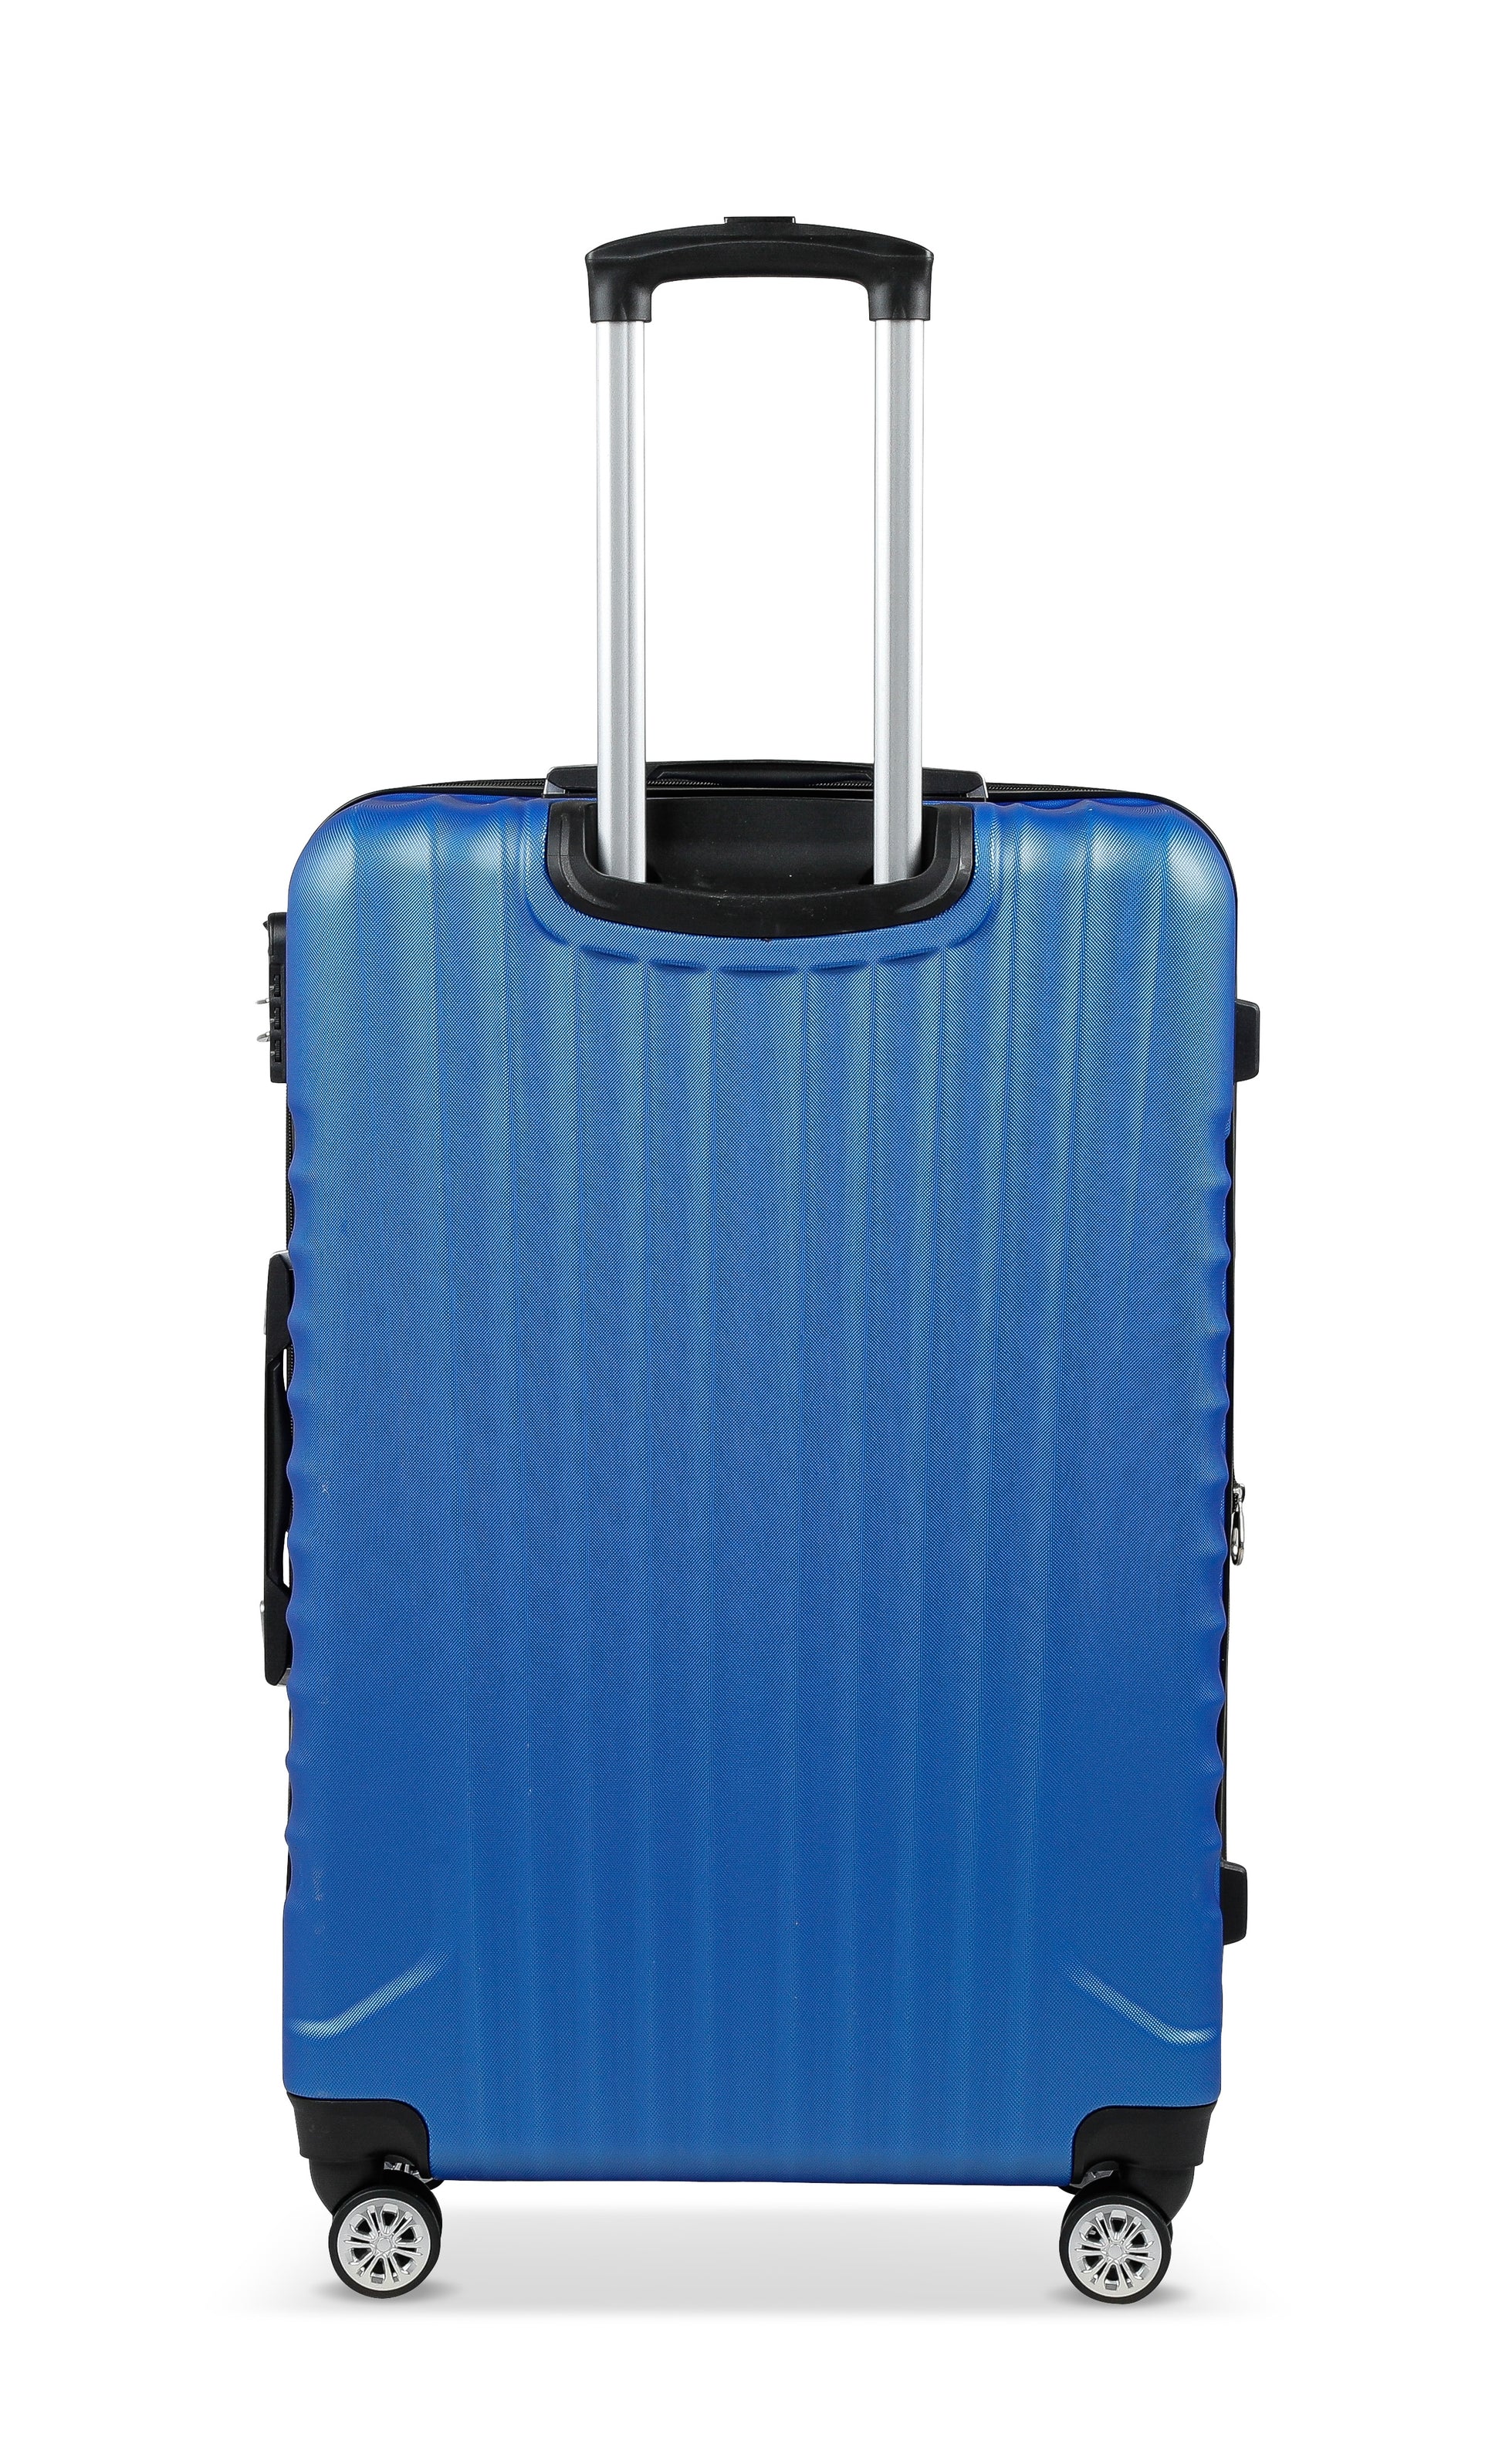 Valise Travel One Bleu Taille Large 76cm extensible vue de dos